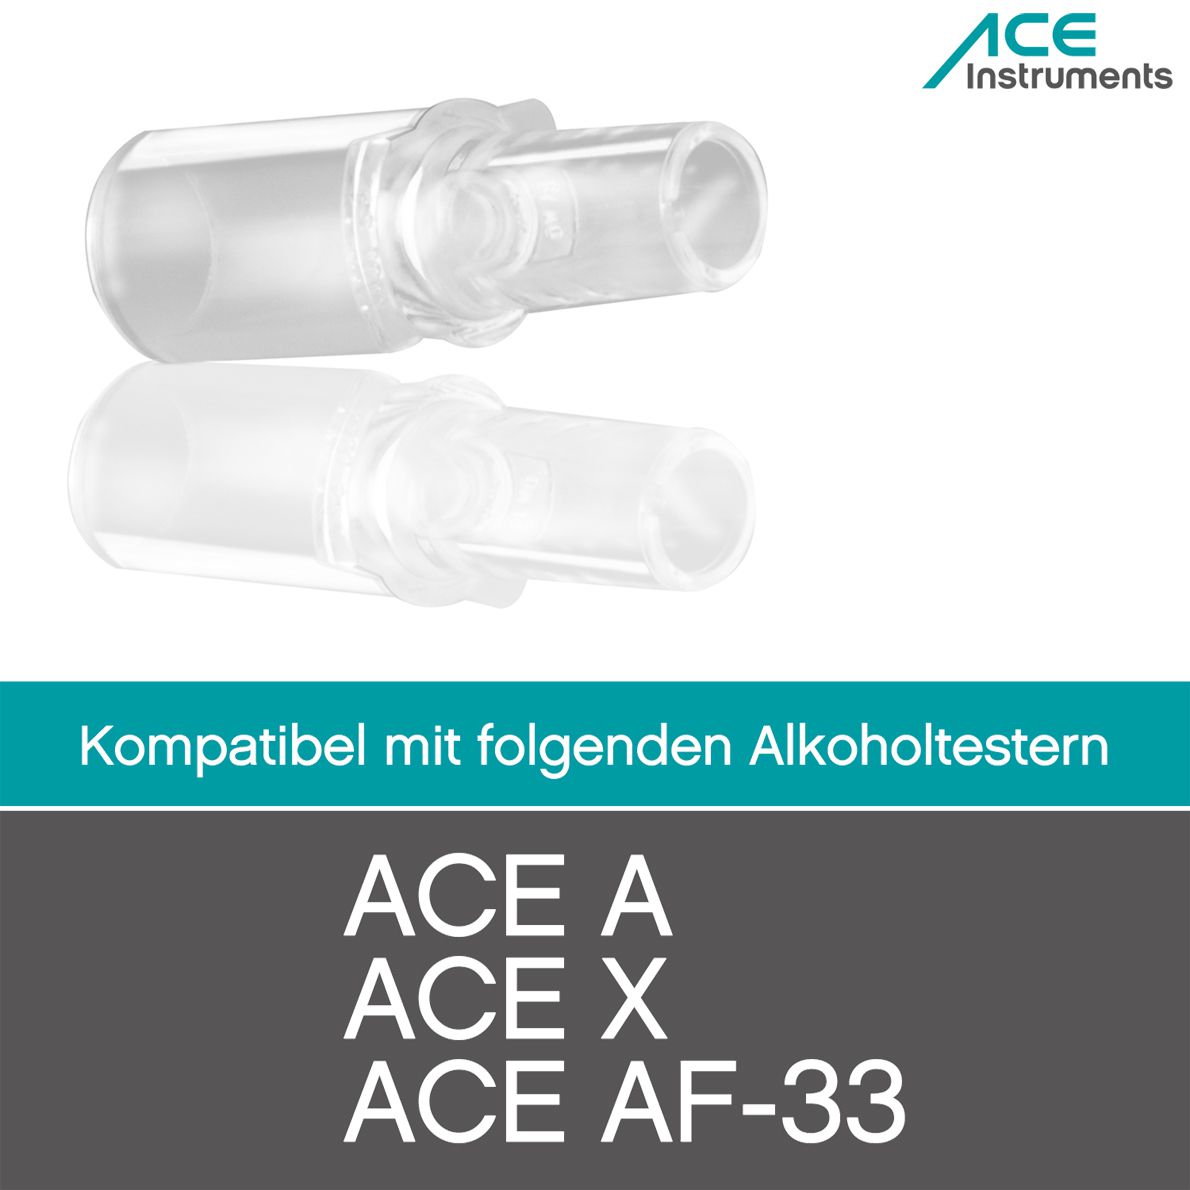 ACE AF-33 Alkotester - der #1 Alkoholtester laut AUTO BILD